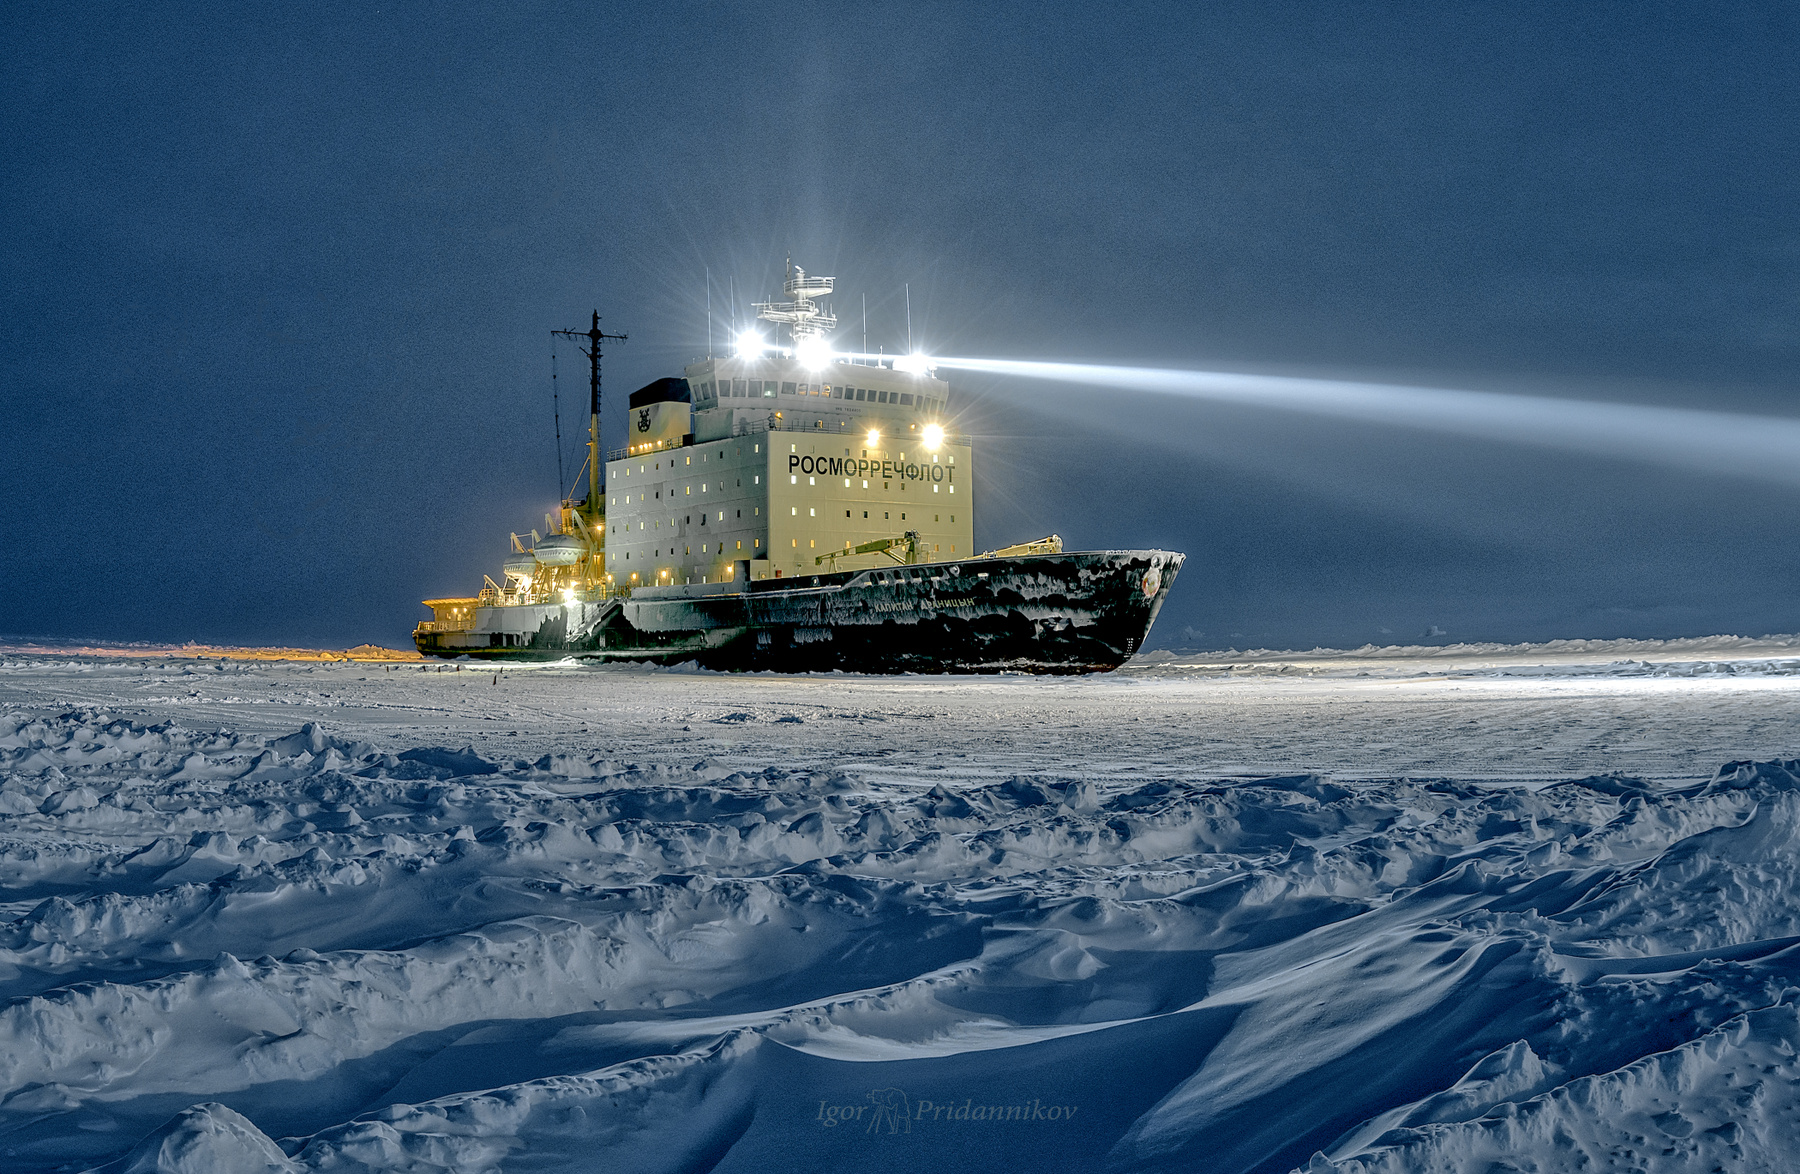 Освещая путь драницын лёд арктика освещённый прожектора ночь